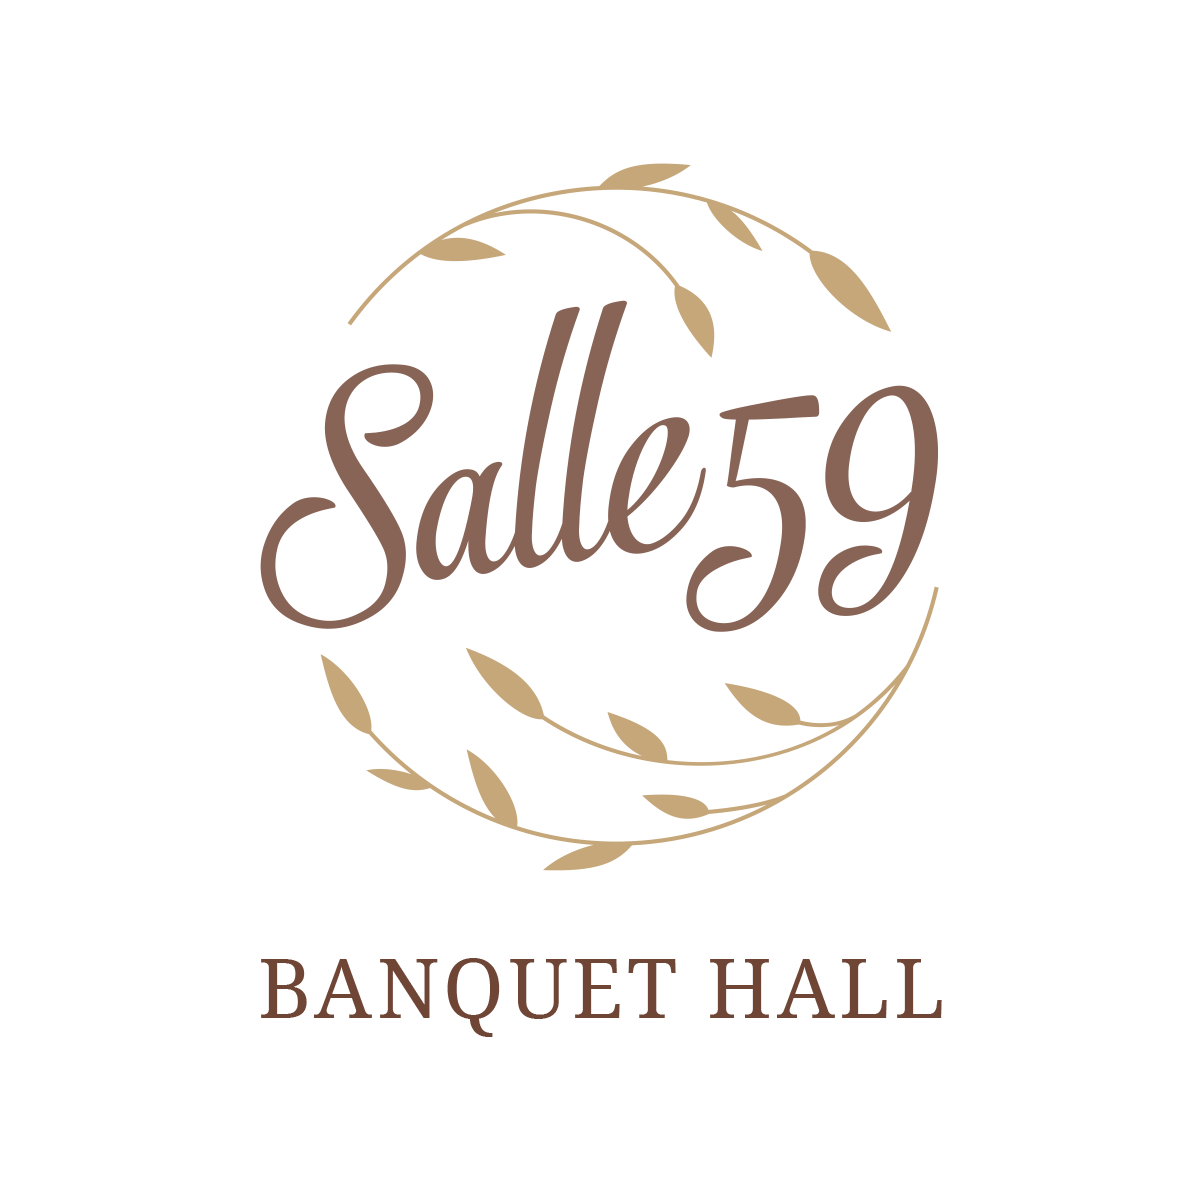 Salle 59 Banquet Hall